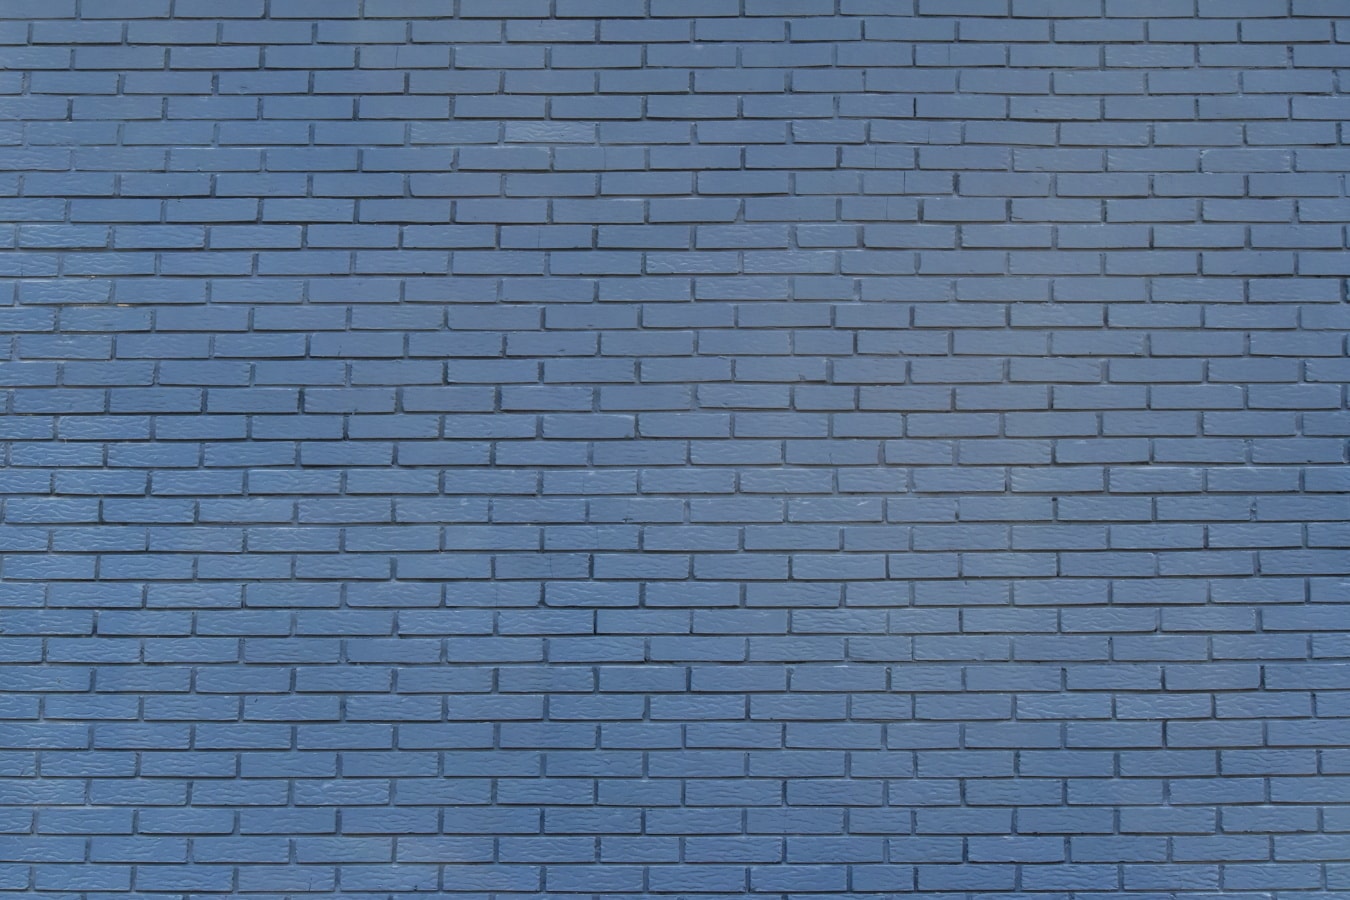 Hình ảnh miễn phí màu xanh gạch bức tường thông tin chi tiết kết cấu  Xi măng Mô hình gạch bề mặt gạch